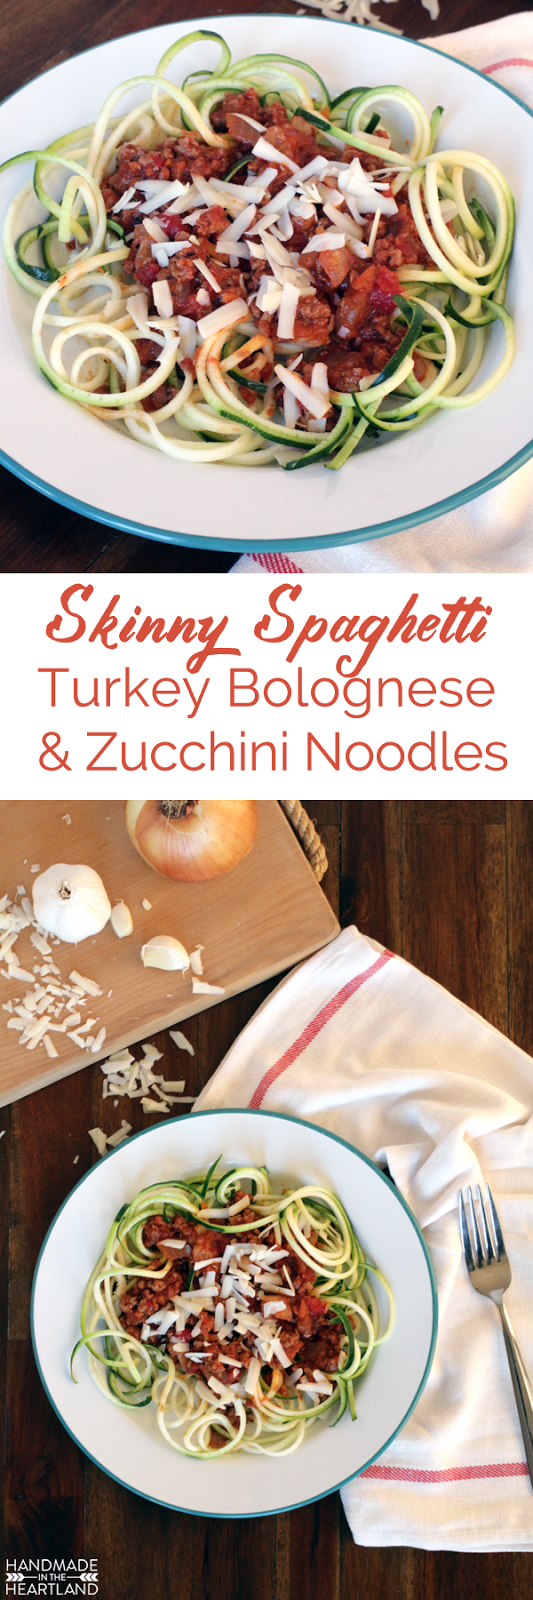 Skinny Spaghetti, Zucchini Noodles & Turkey Bolognese Recipe